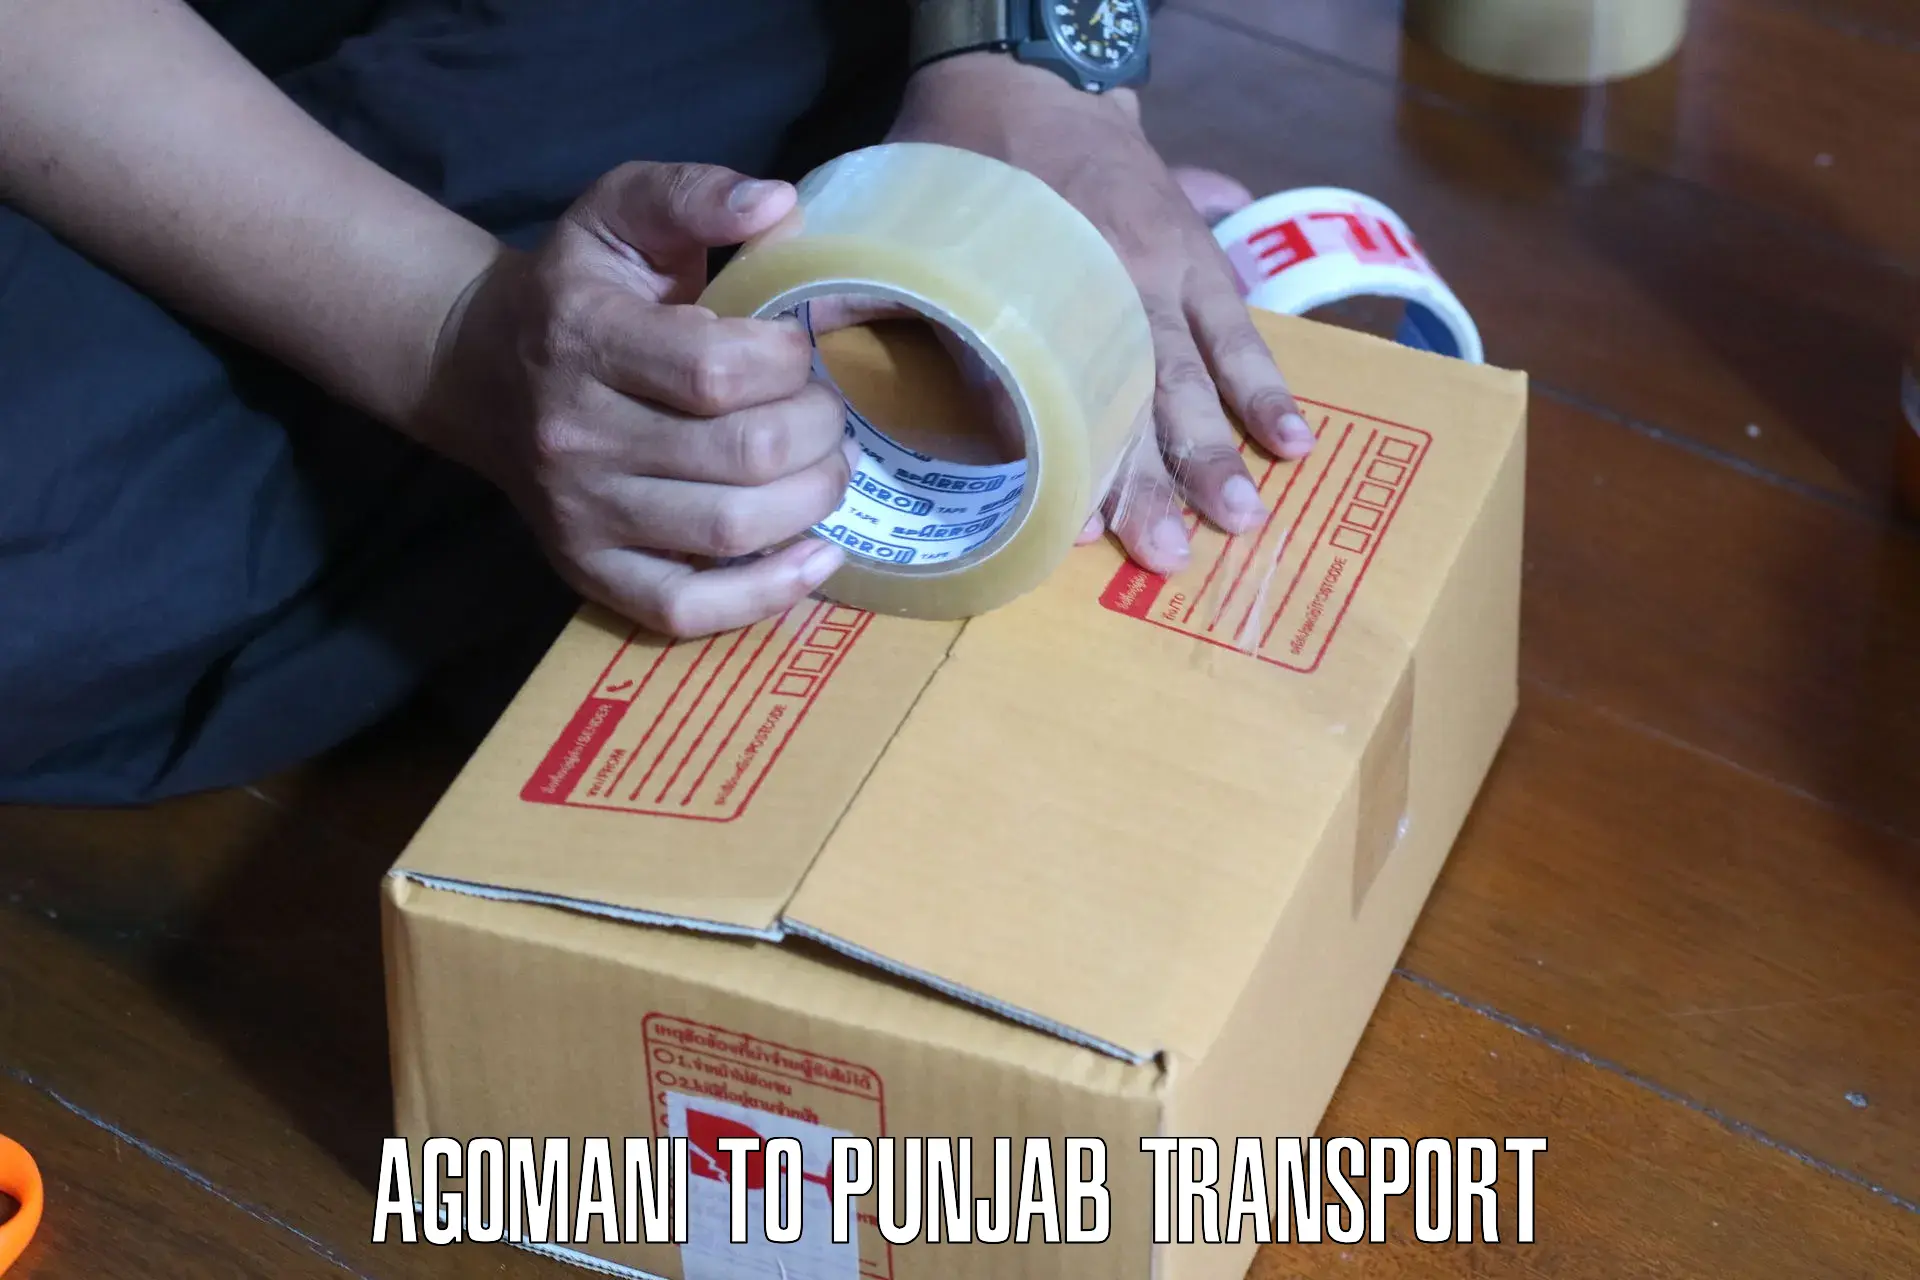 Cargo transport services Agomani to Ajnala